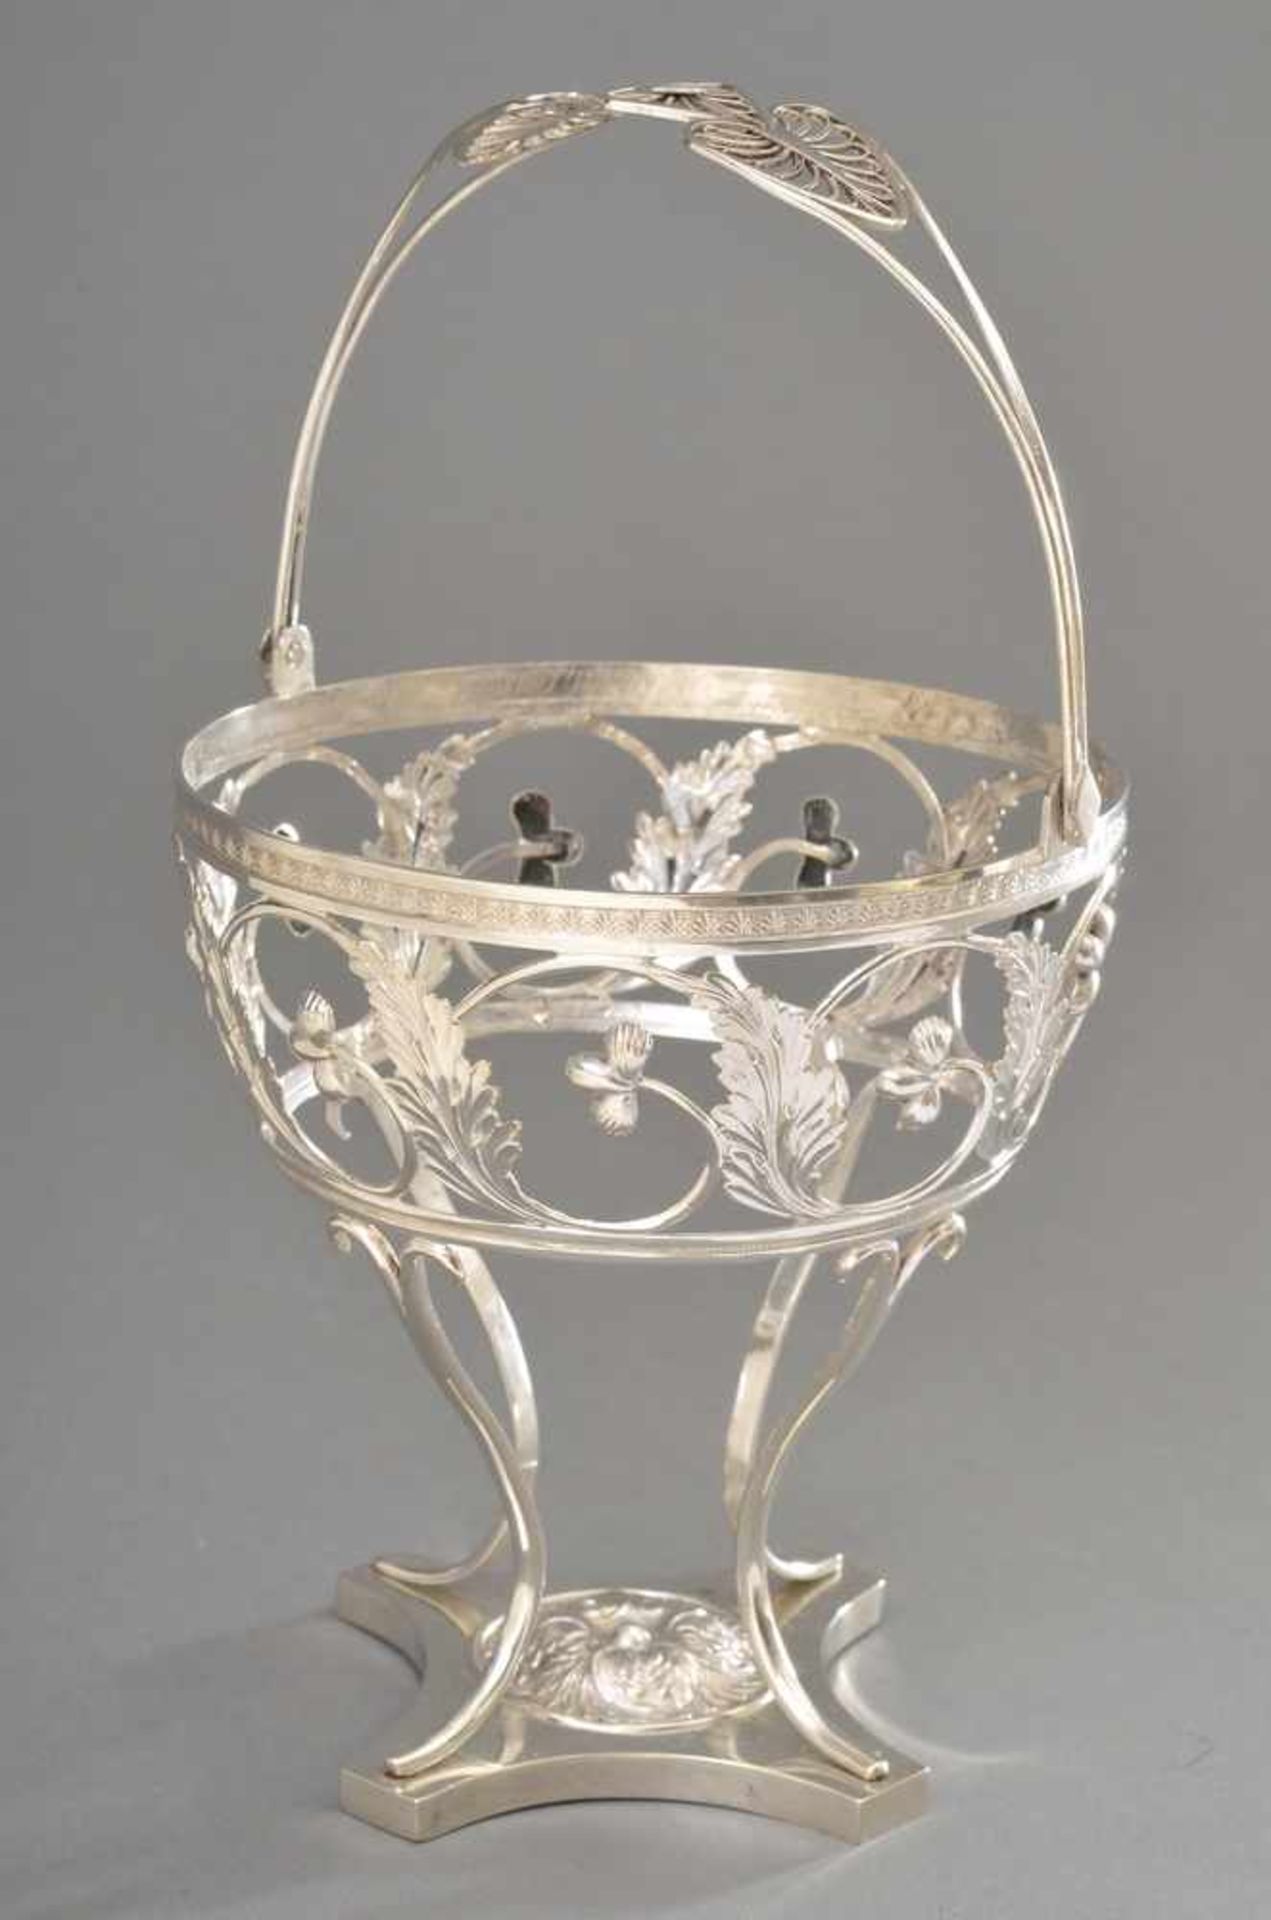 Empire Zuckerkörbchen "Blütenranken", Silber 13 Lot, 155g, Ø 11,5cm, H. 12,5cm, Einsatz fehlt